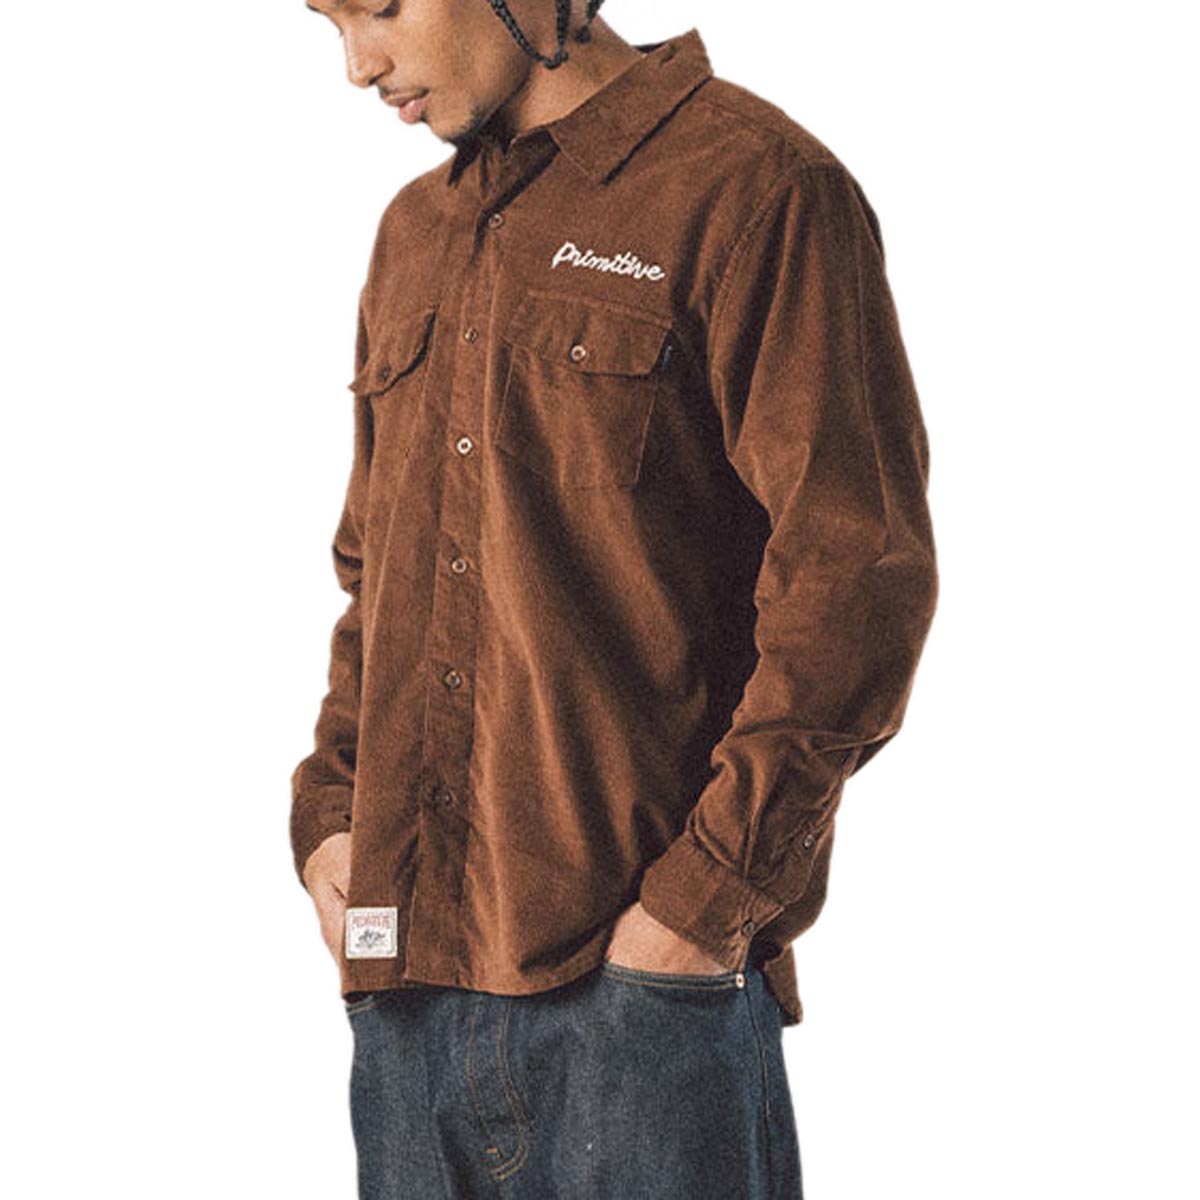 Primitive De Soto Woven Jacket - Brown image 4